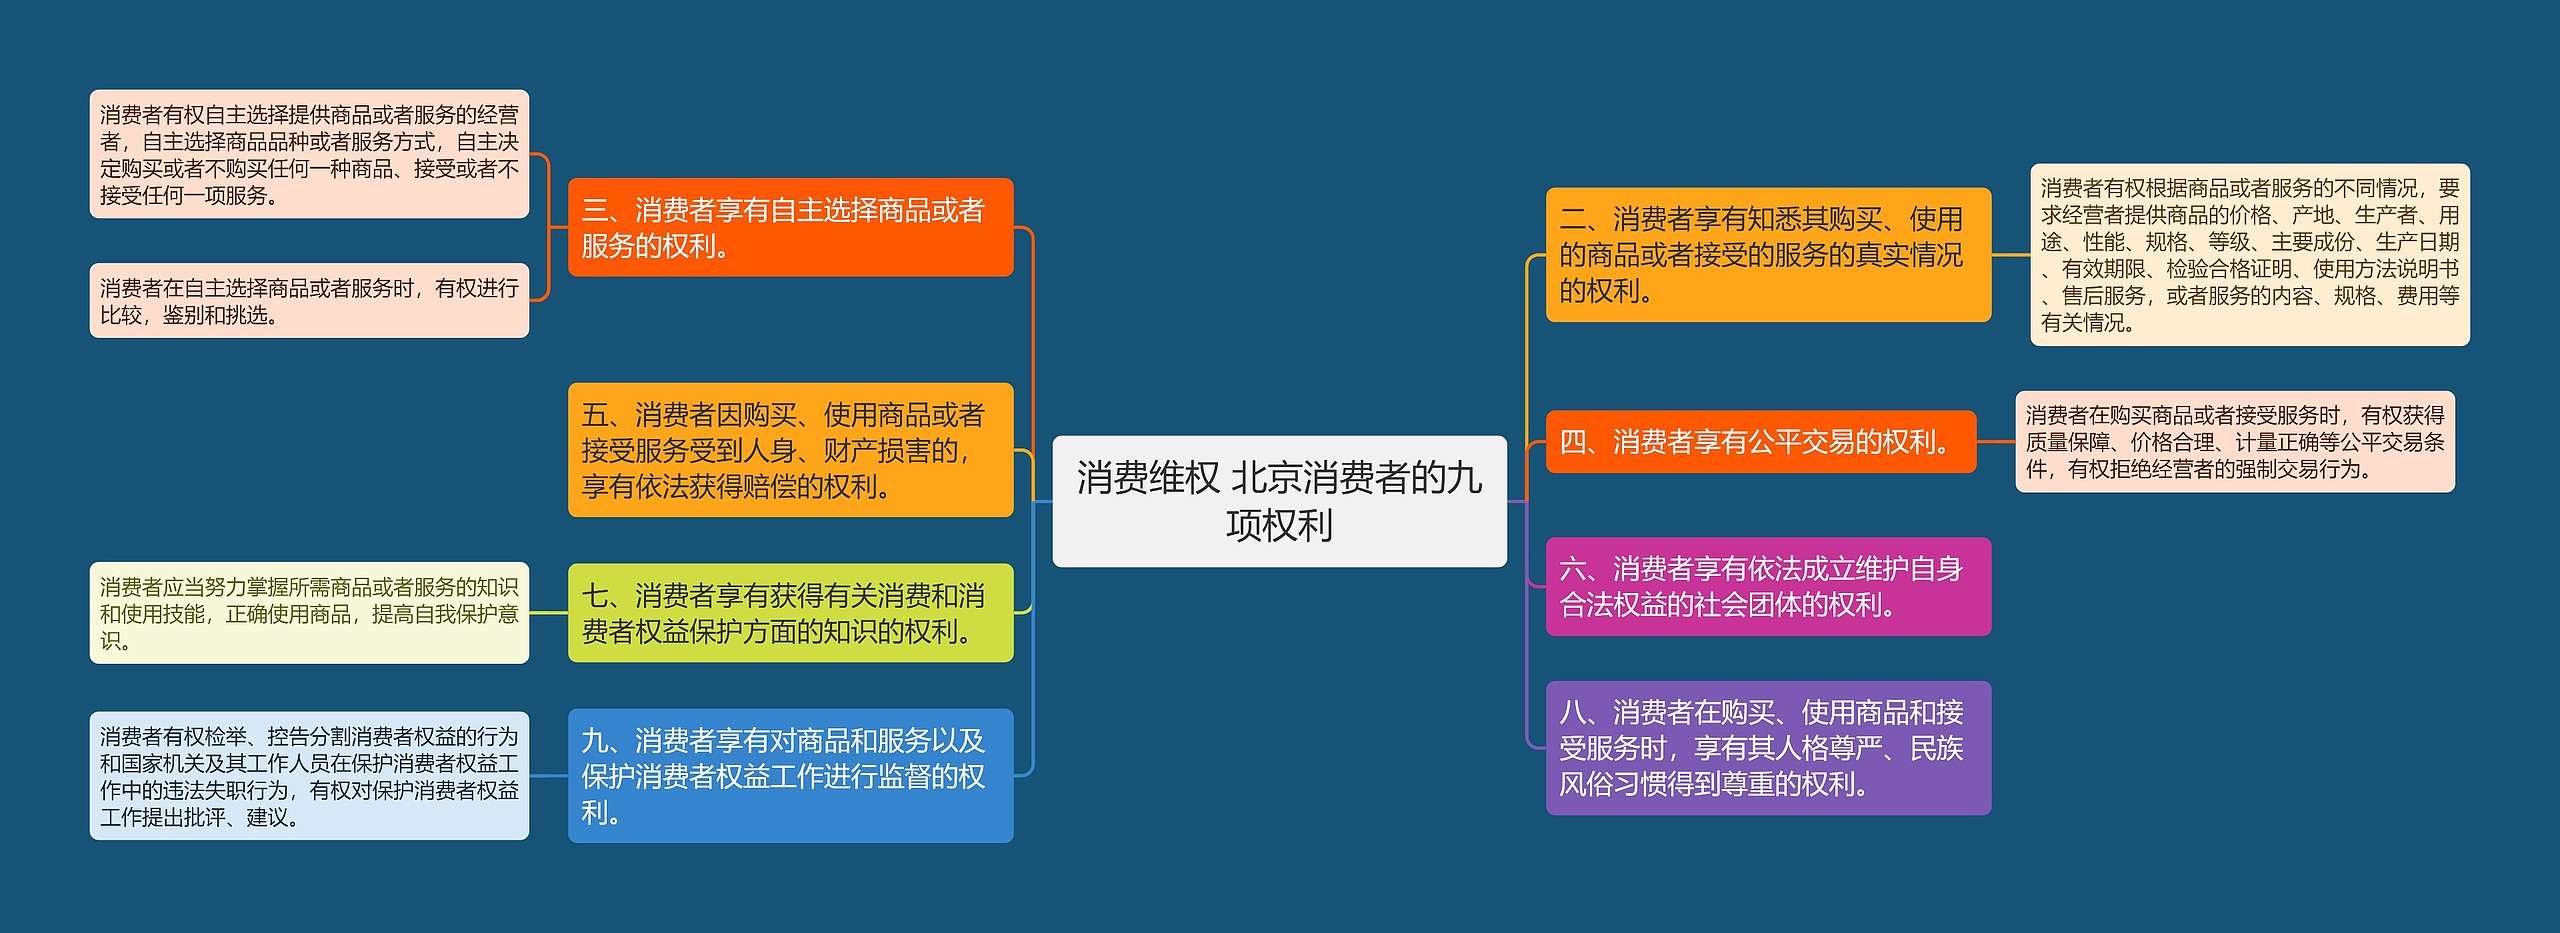 消费维权 北京消费者的九项权利